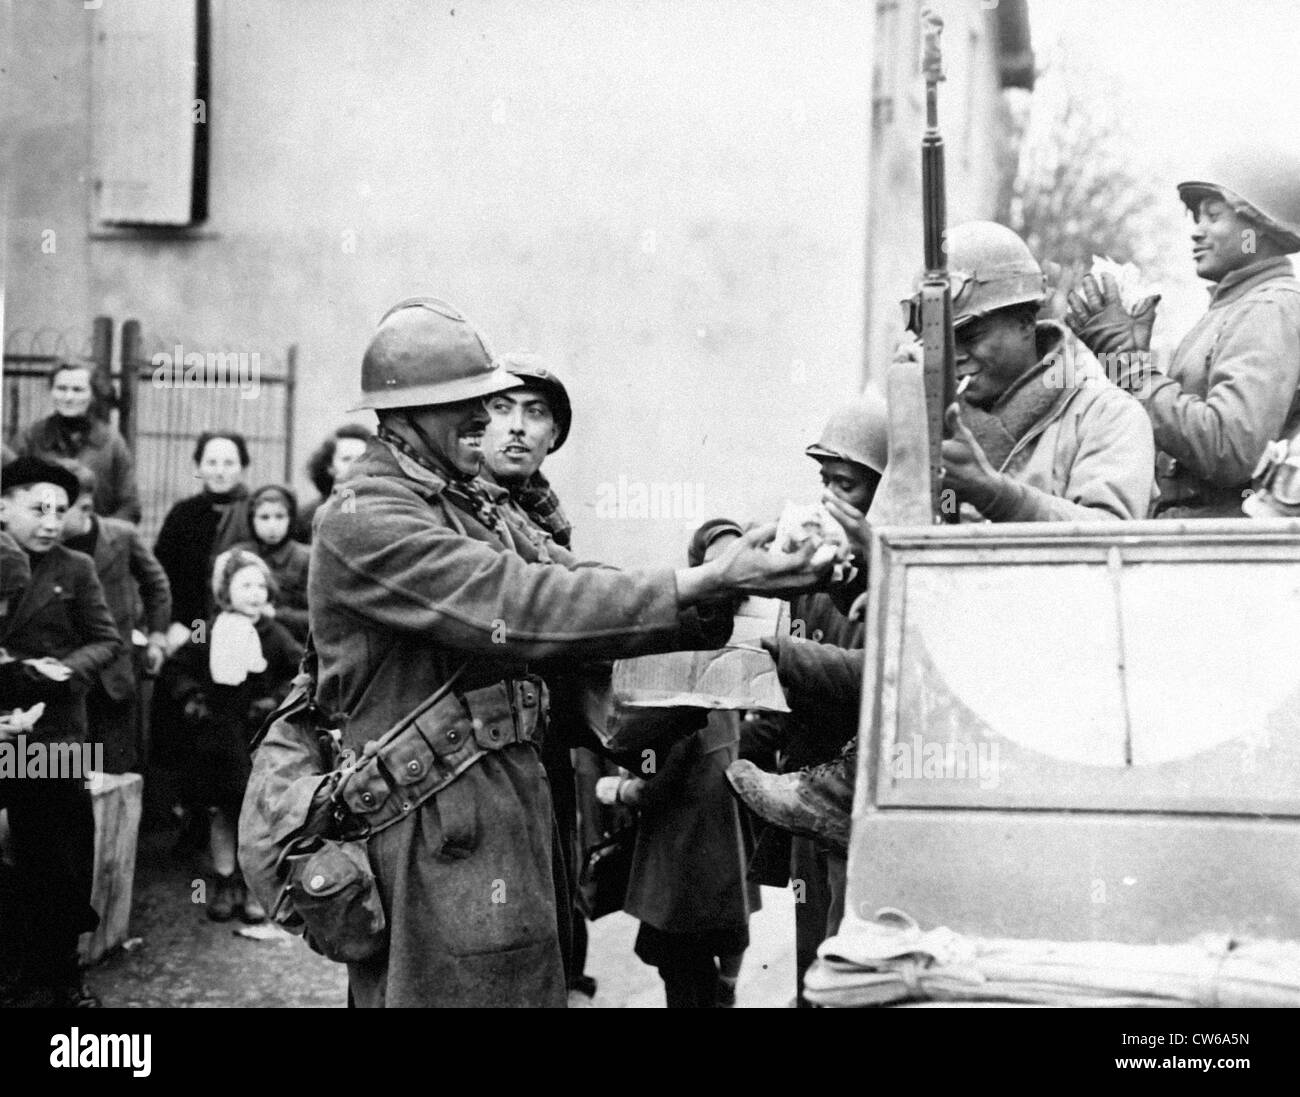 Soldats français agiter candy avec U.S troopers (Rouffach-France-Feb.5,1945) Banque D'Images